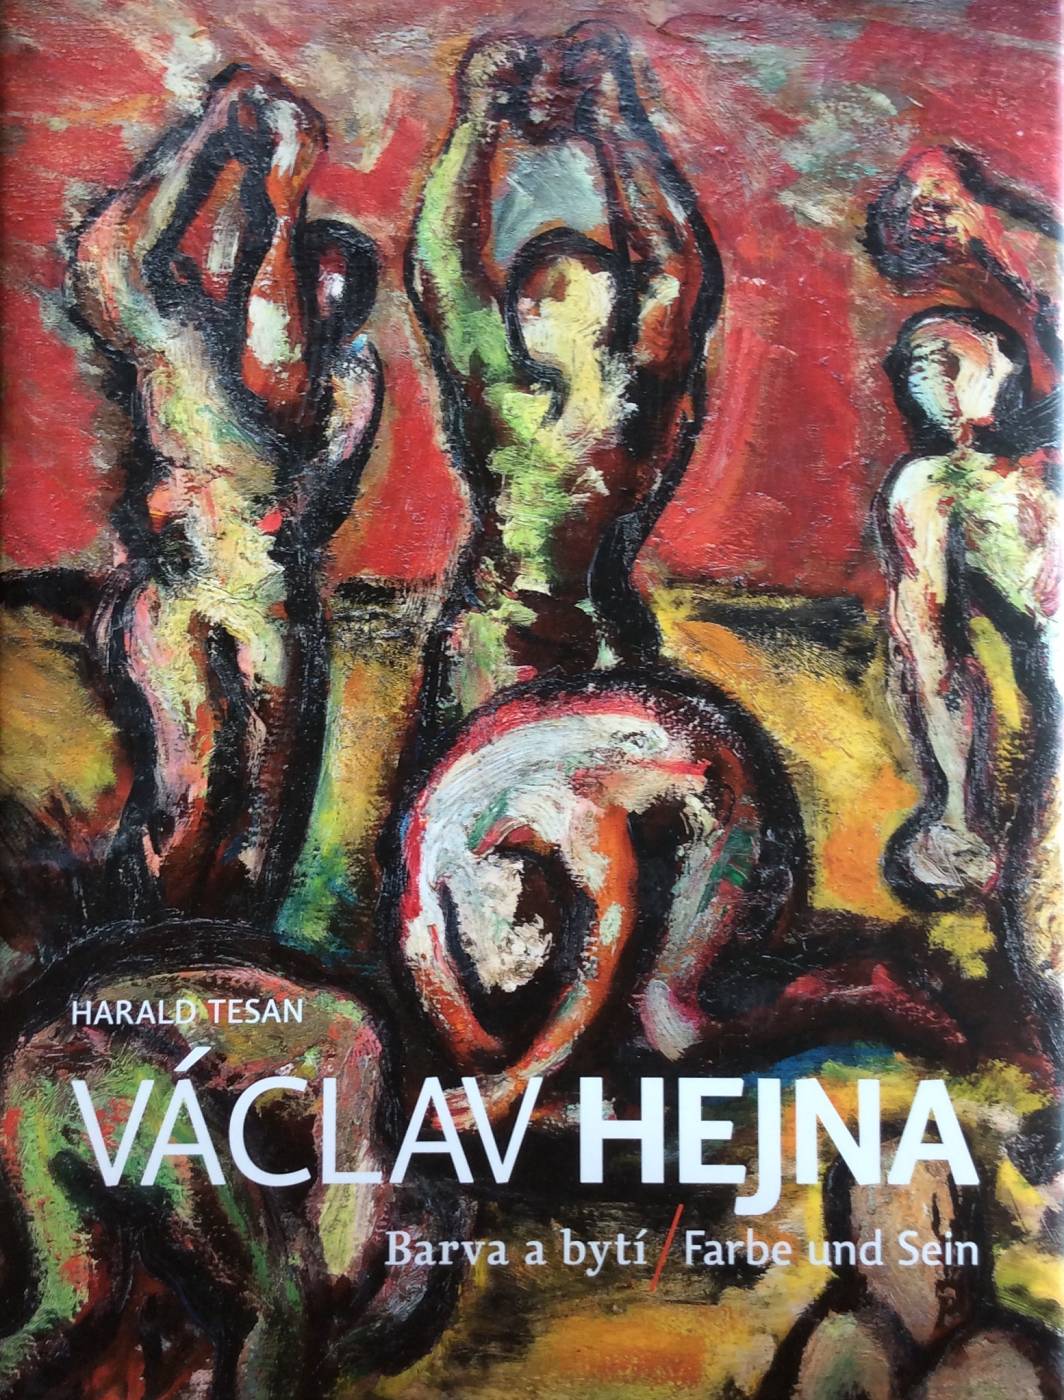 Václav Hejna – Barva a bytí / Farbe und Sein